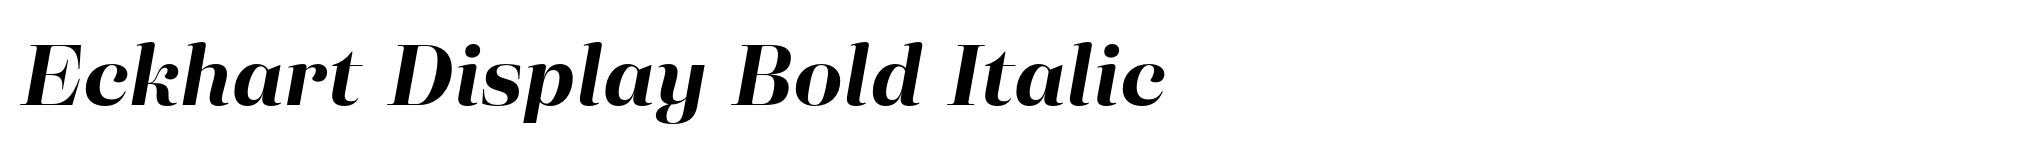 Eckhart Display Bold Italic image